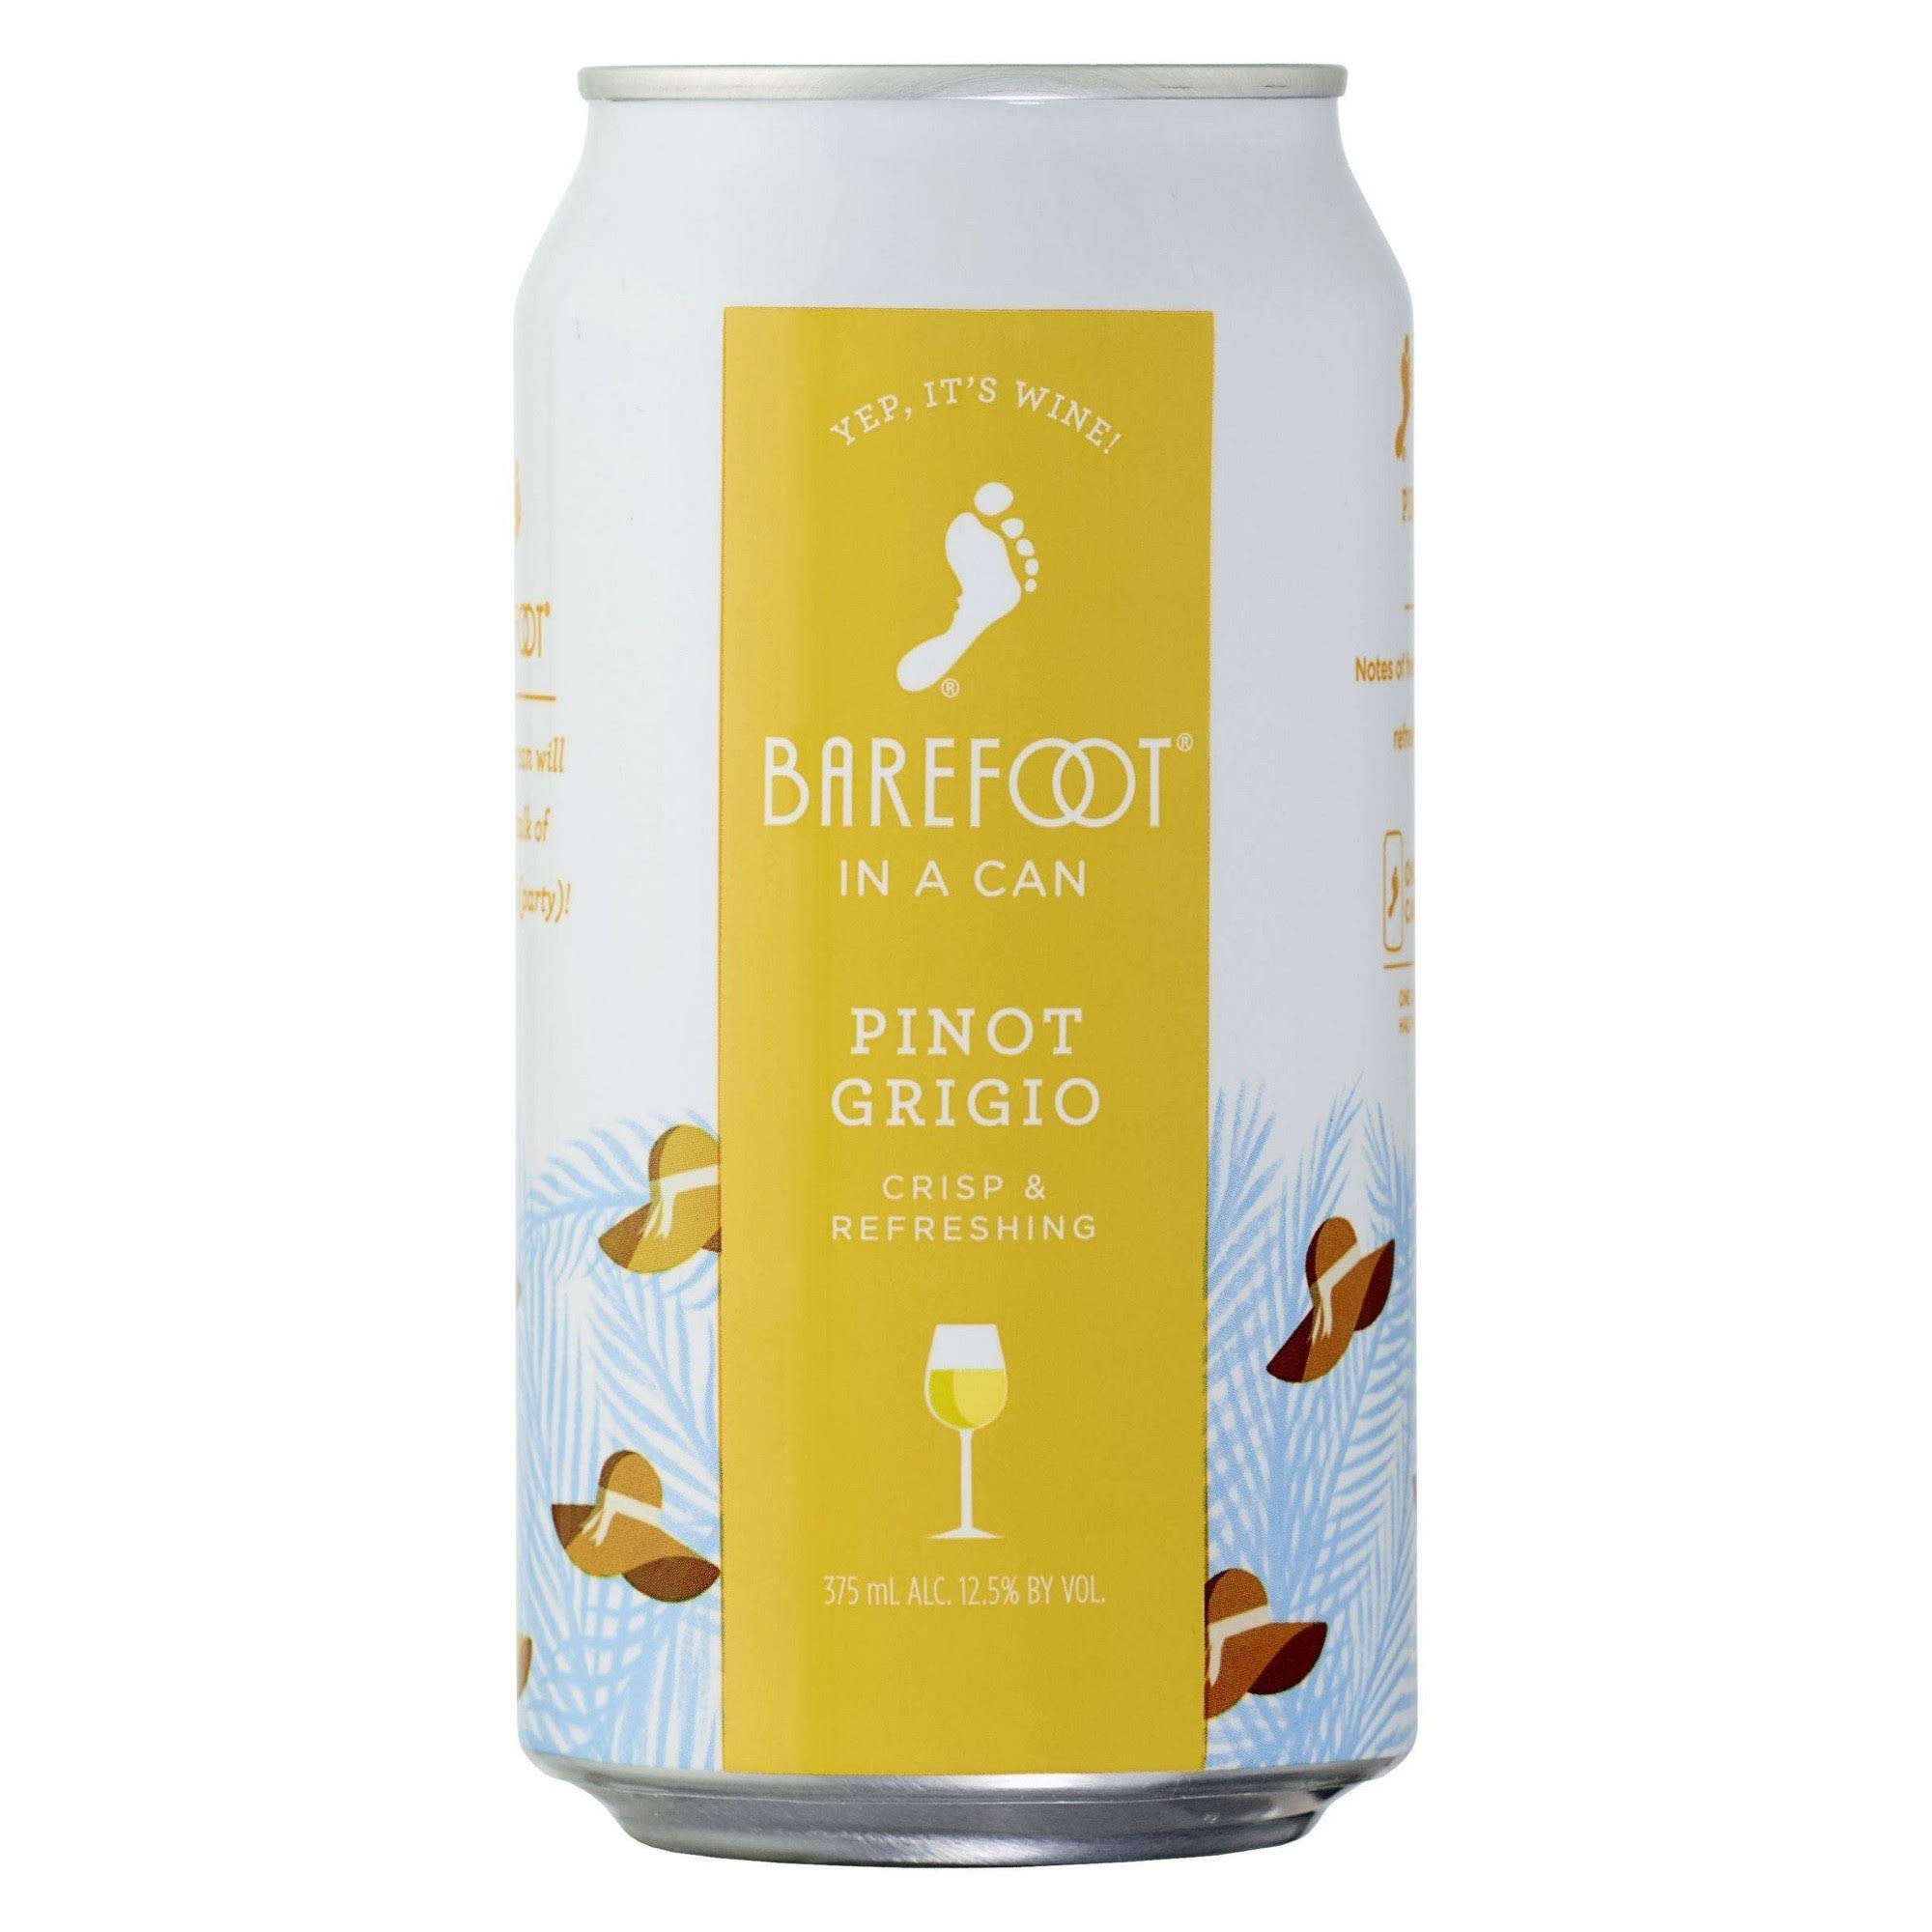 Barefoot Pinot Grigio White Wine - 375ml Can